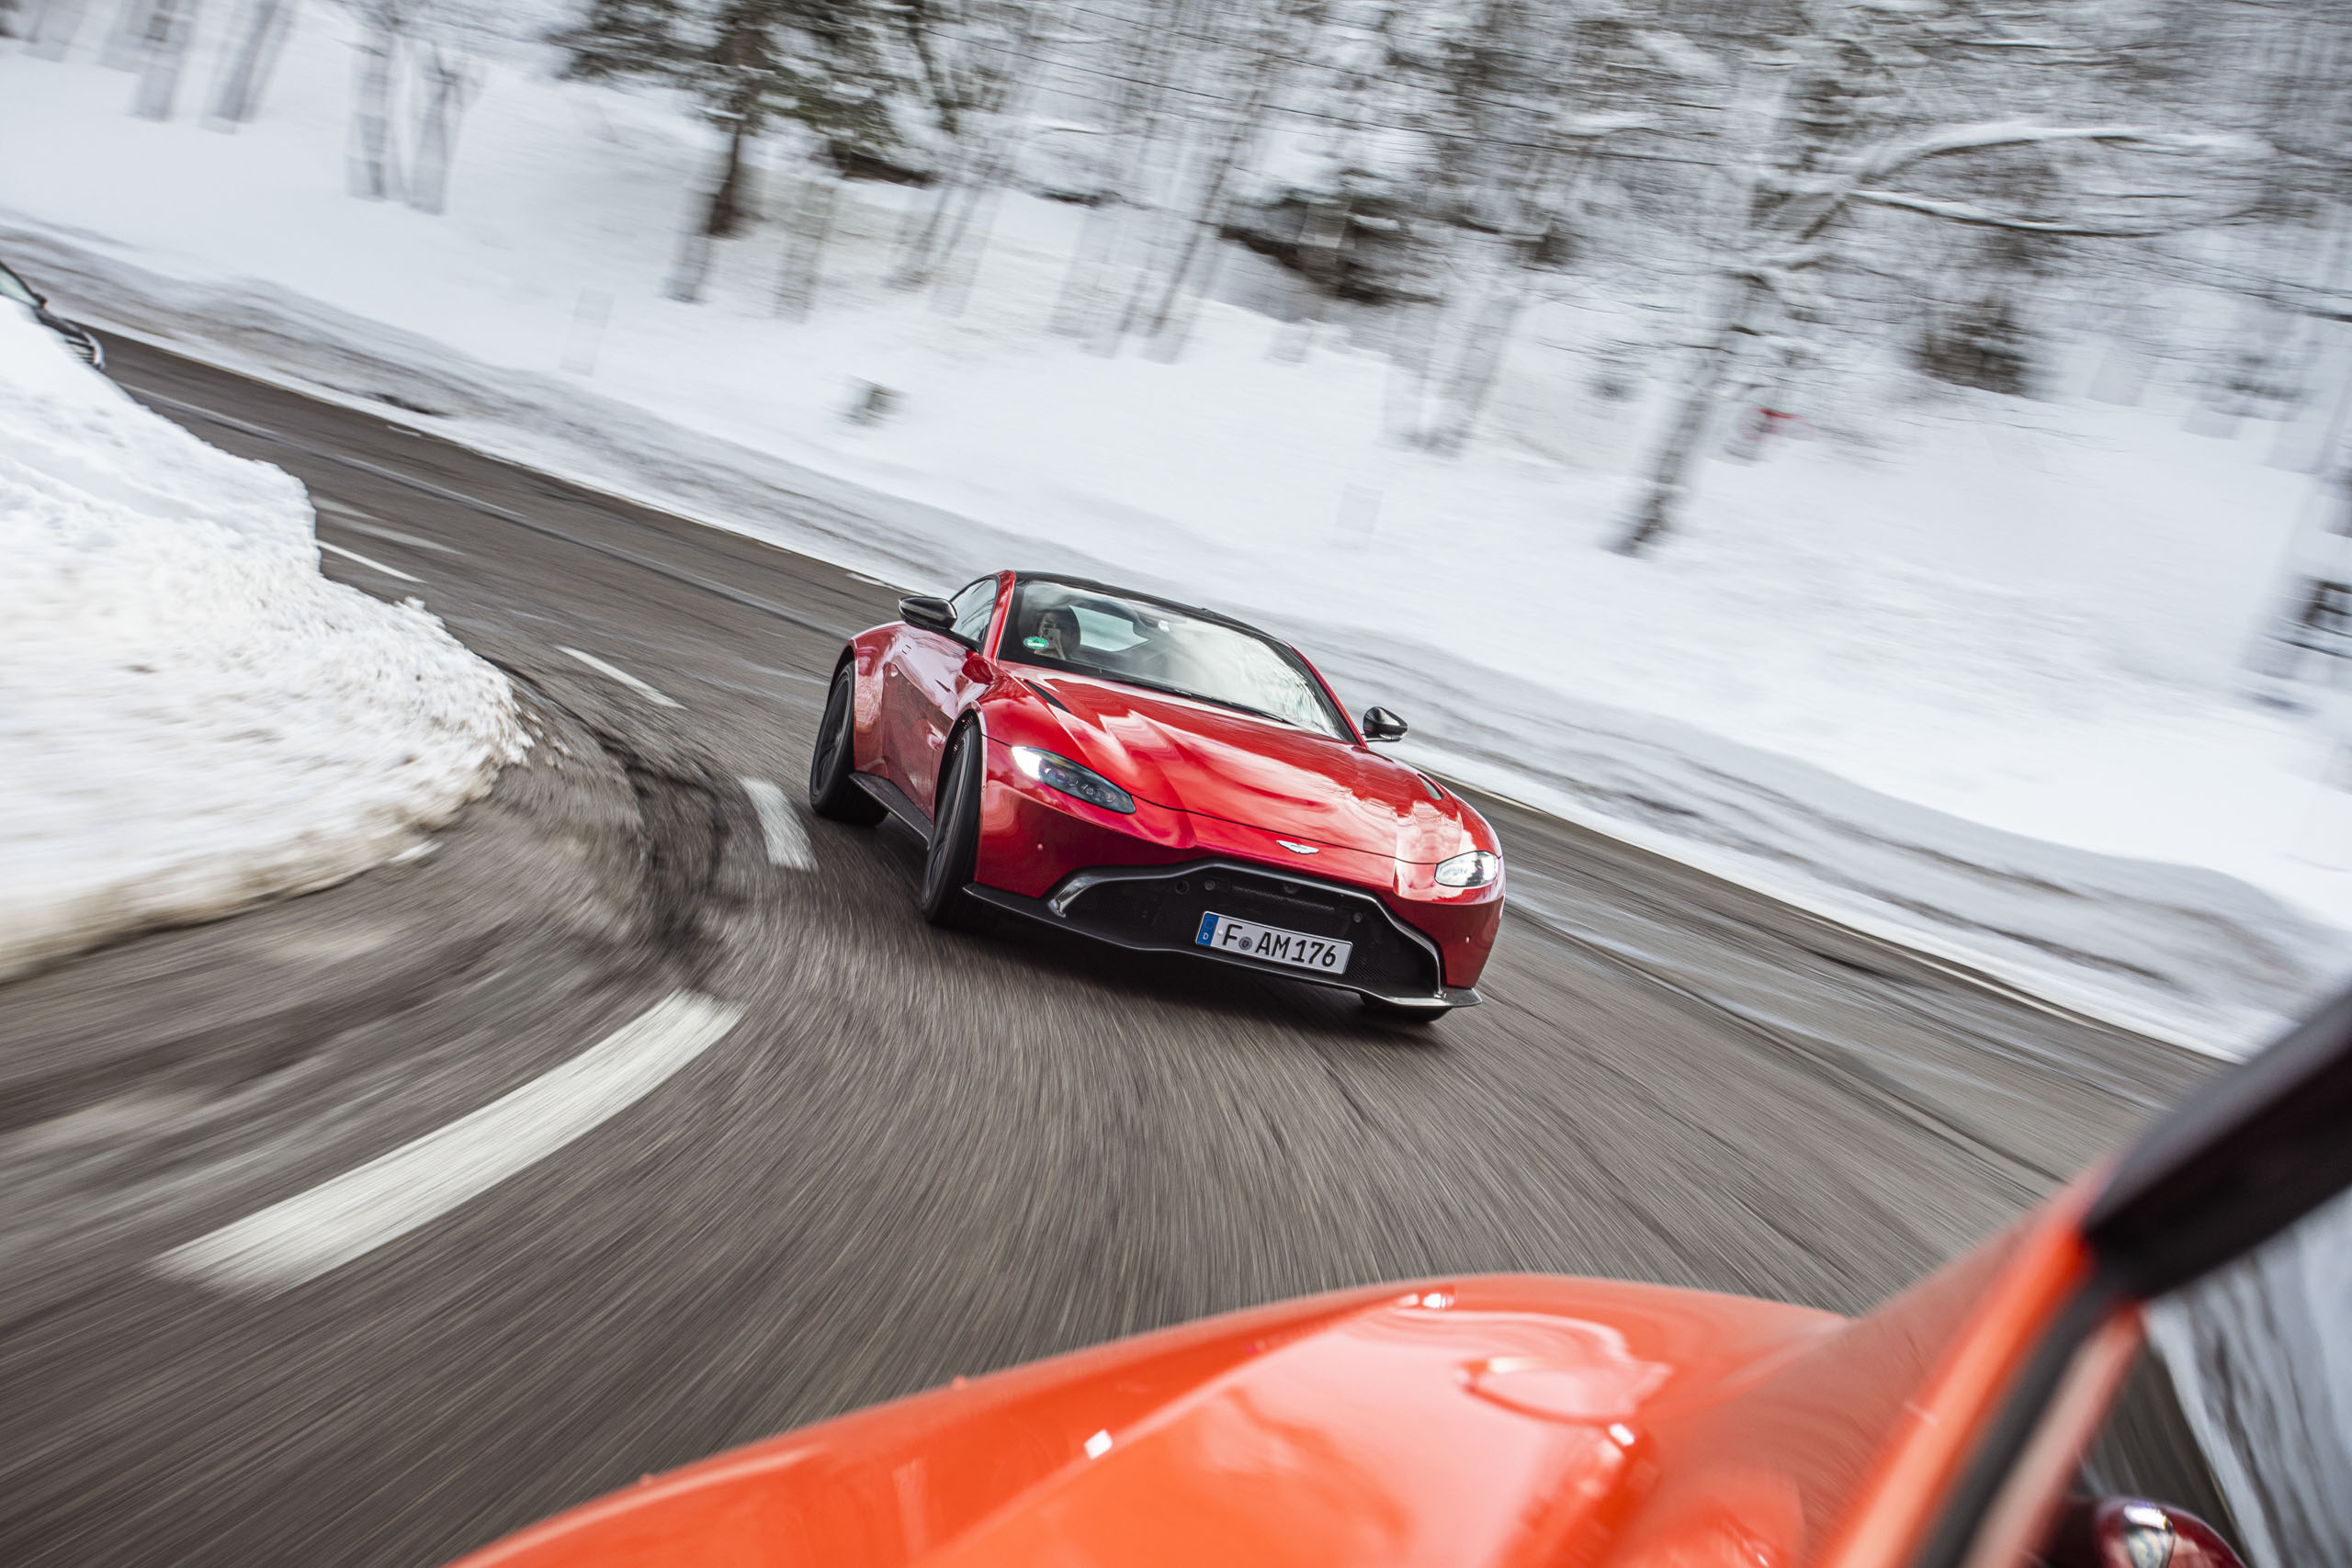 Roter Aston Martin Geneva bei Schnee in einer Kurve